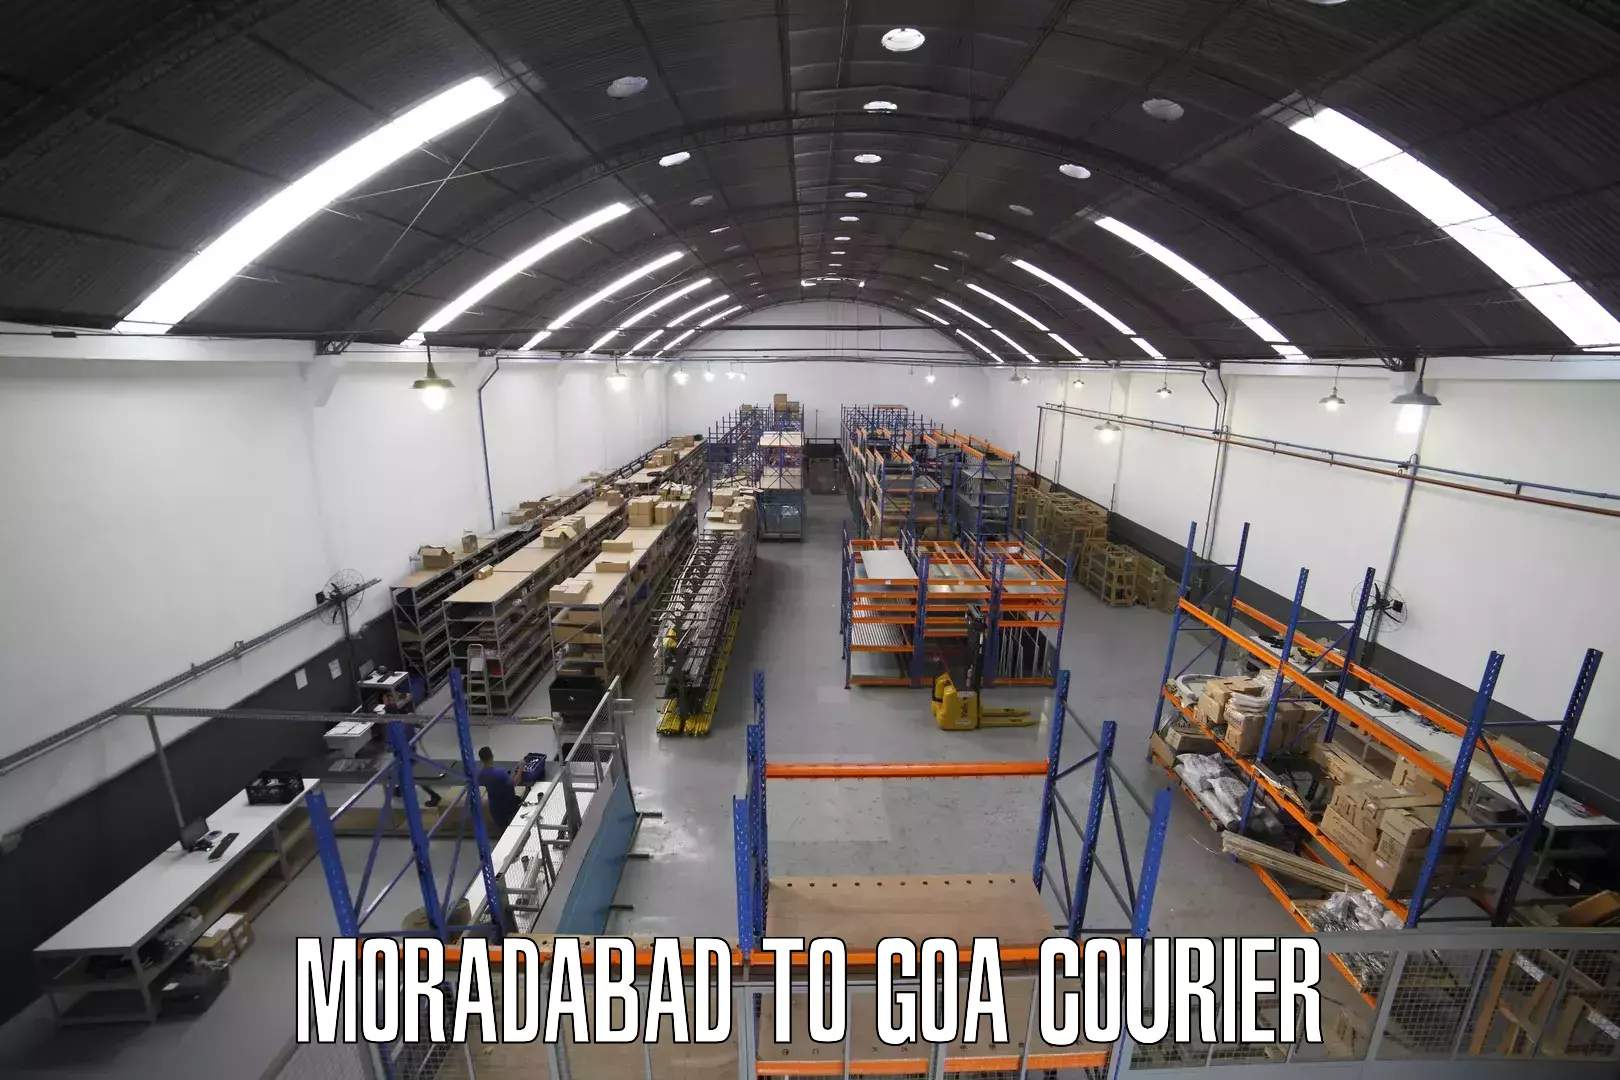 Express logistics service Moradabad to Ponda